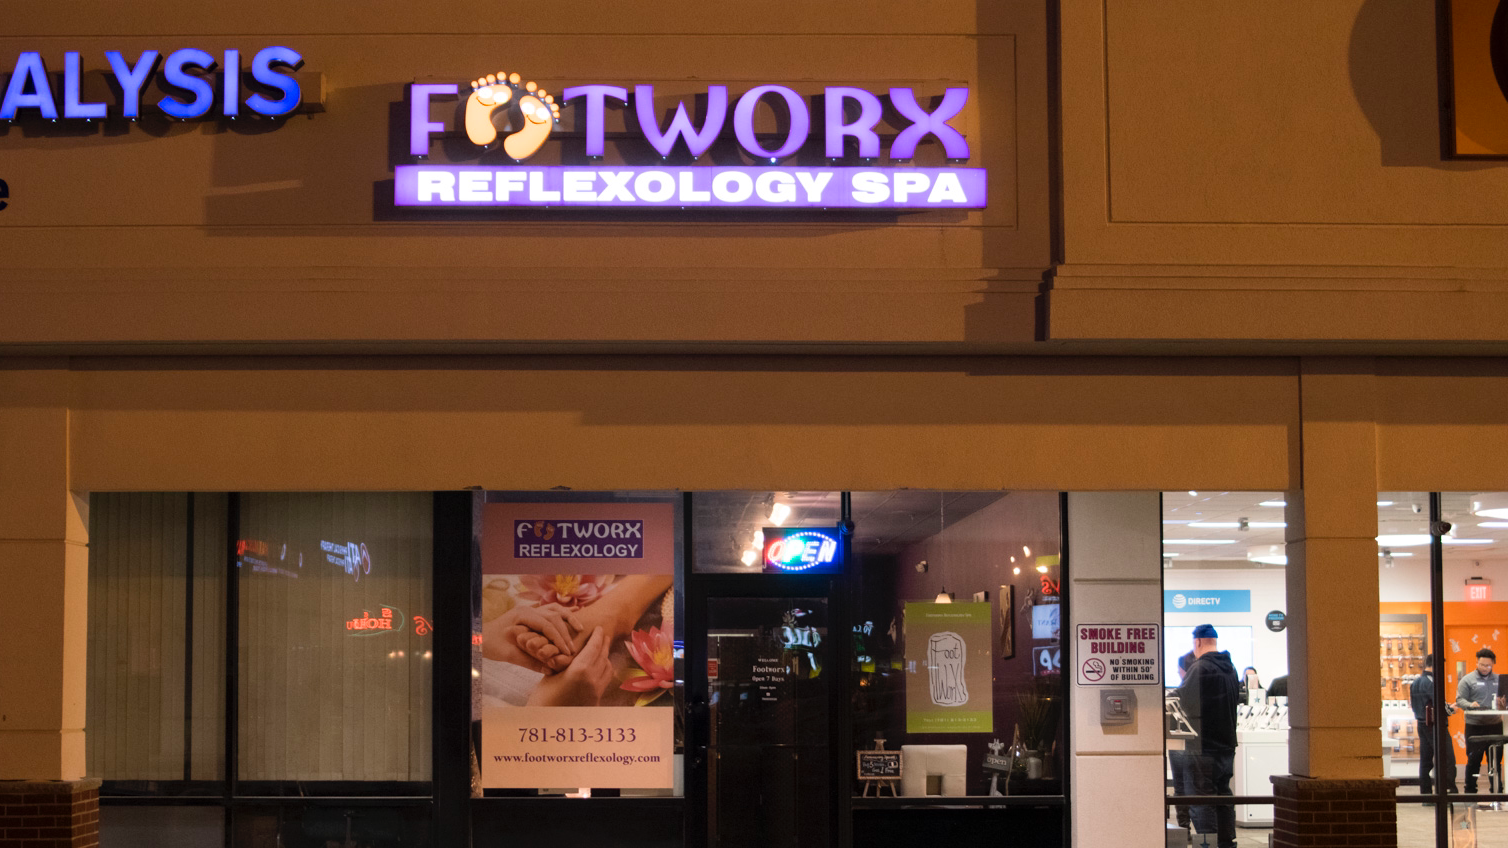 Footworx Reflexology